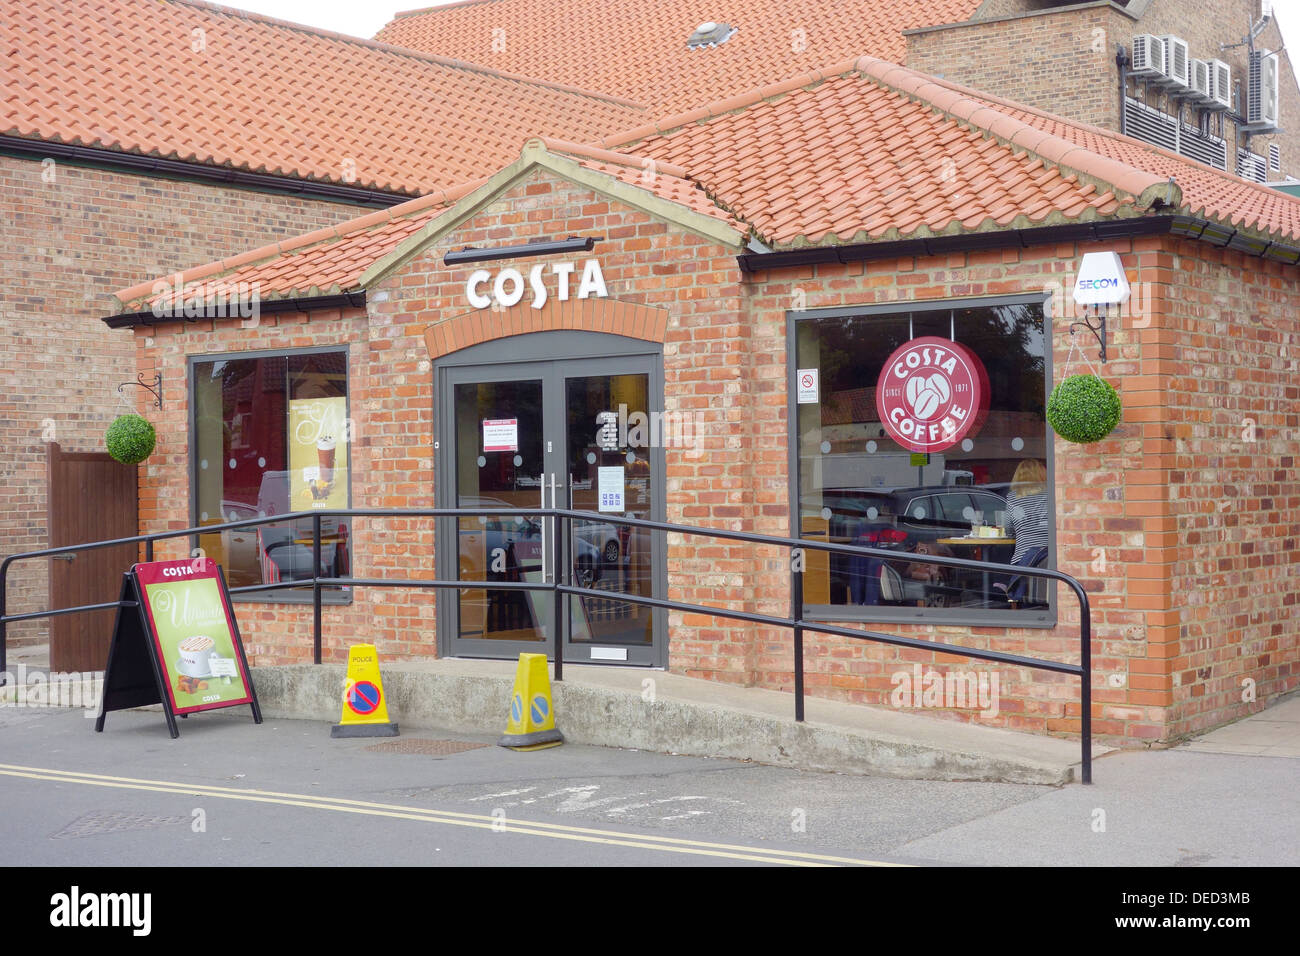 Café Costa Coffee a récemment ouvert dans le bâtiment converti de toilettes publiques vendues pour le réaménagement par l'autorité locale Banque D'Images